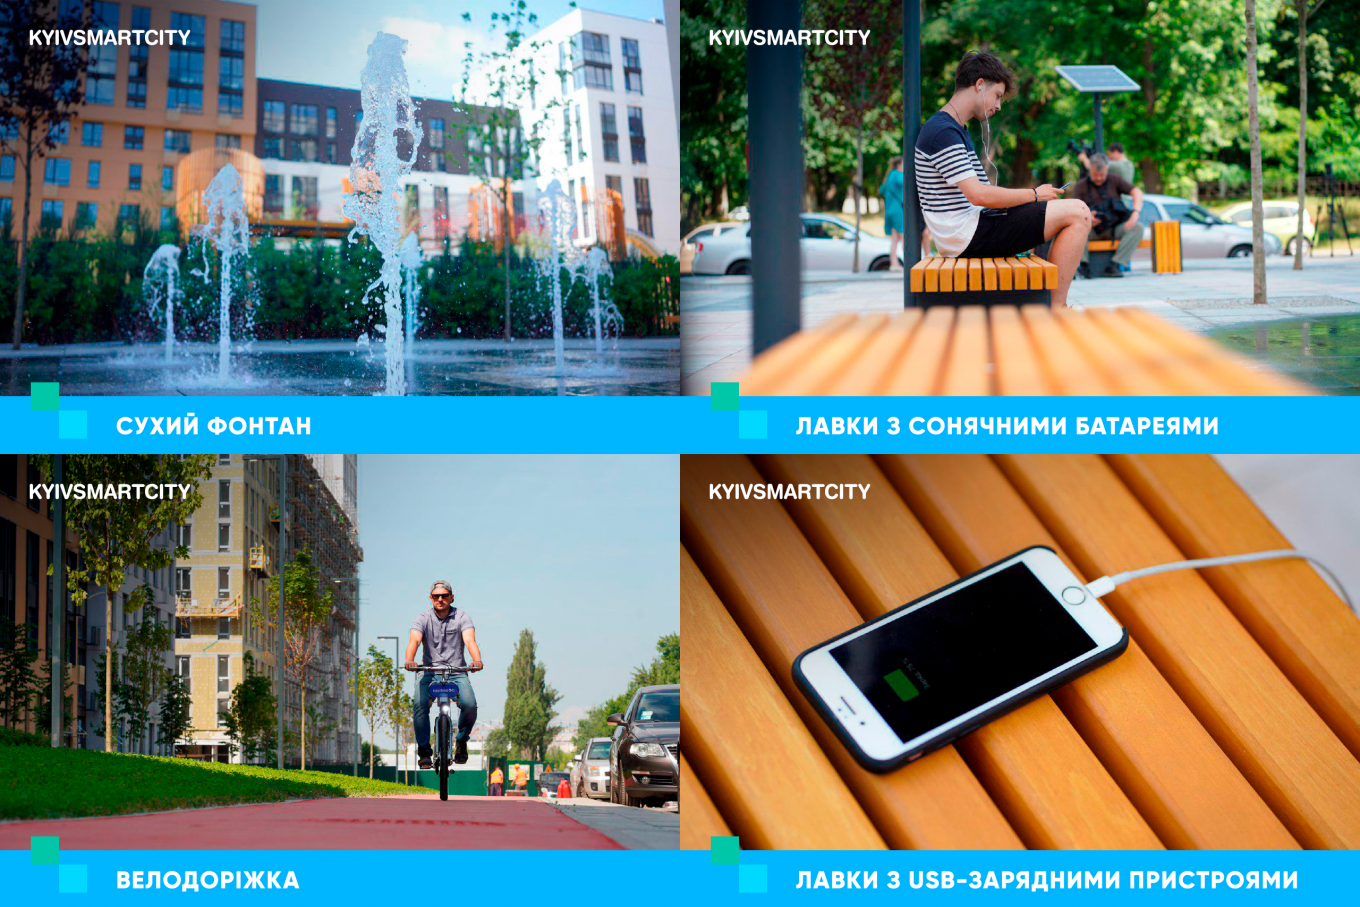 В Киеве открыли первую smart-улицу